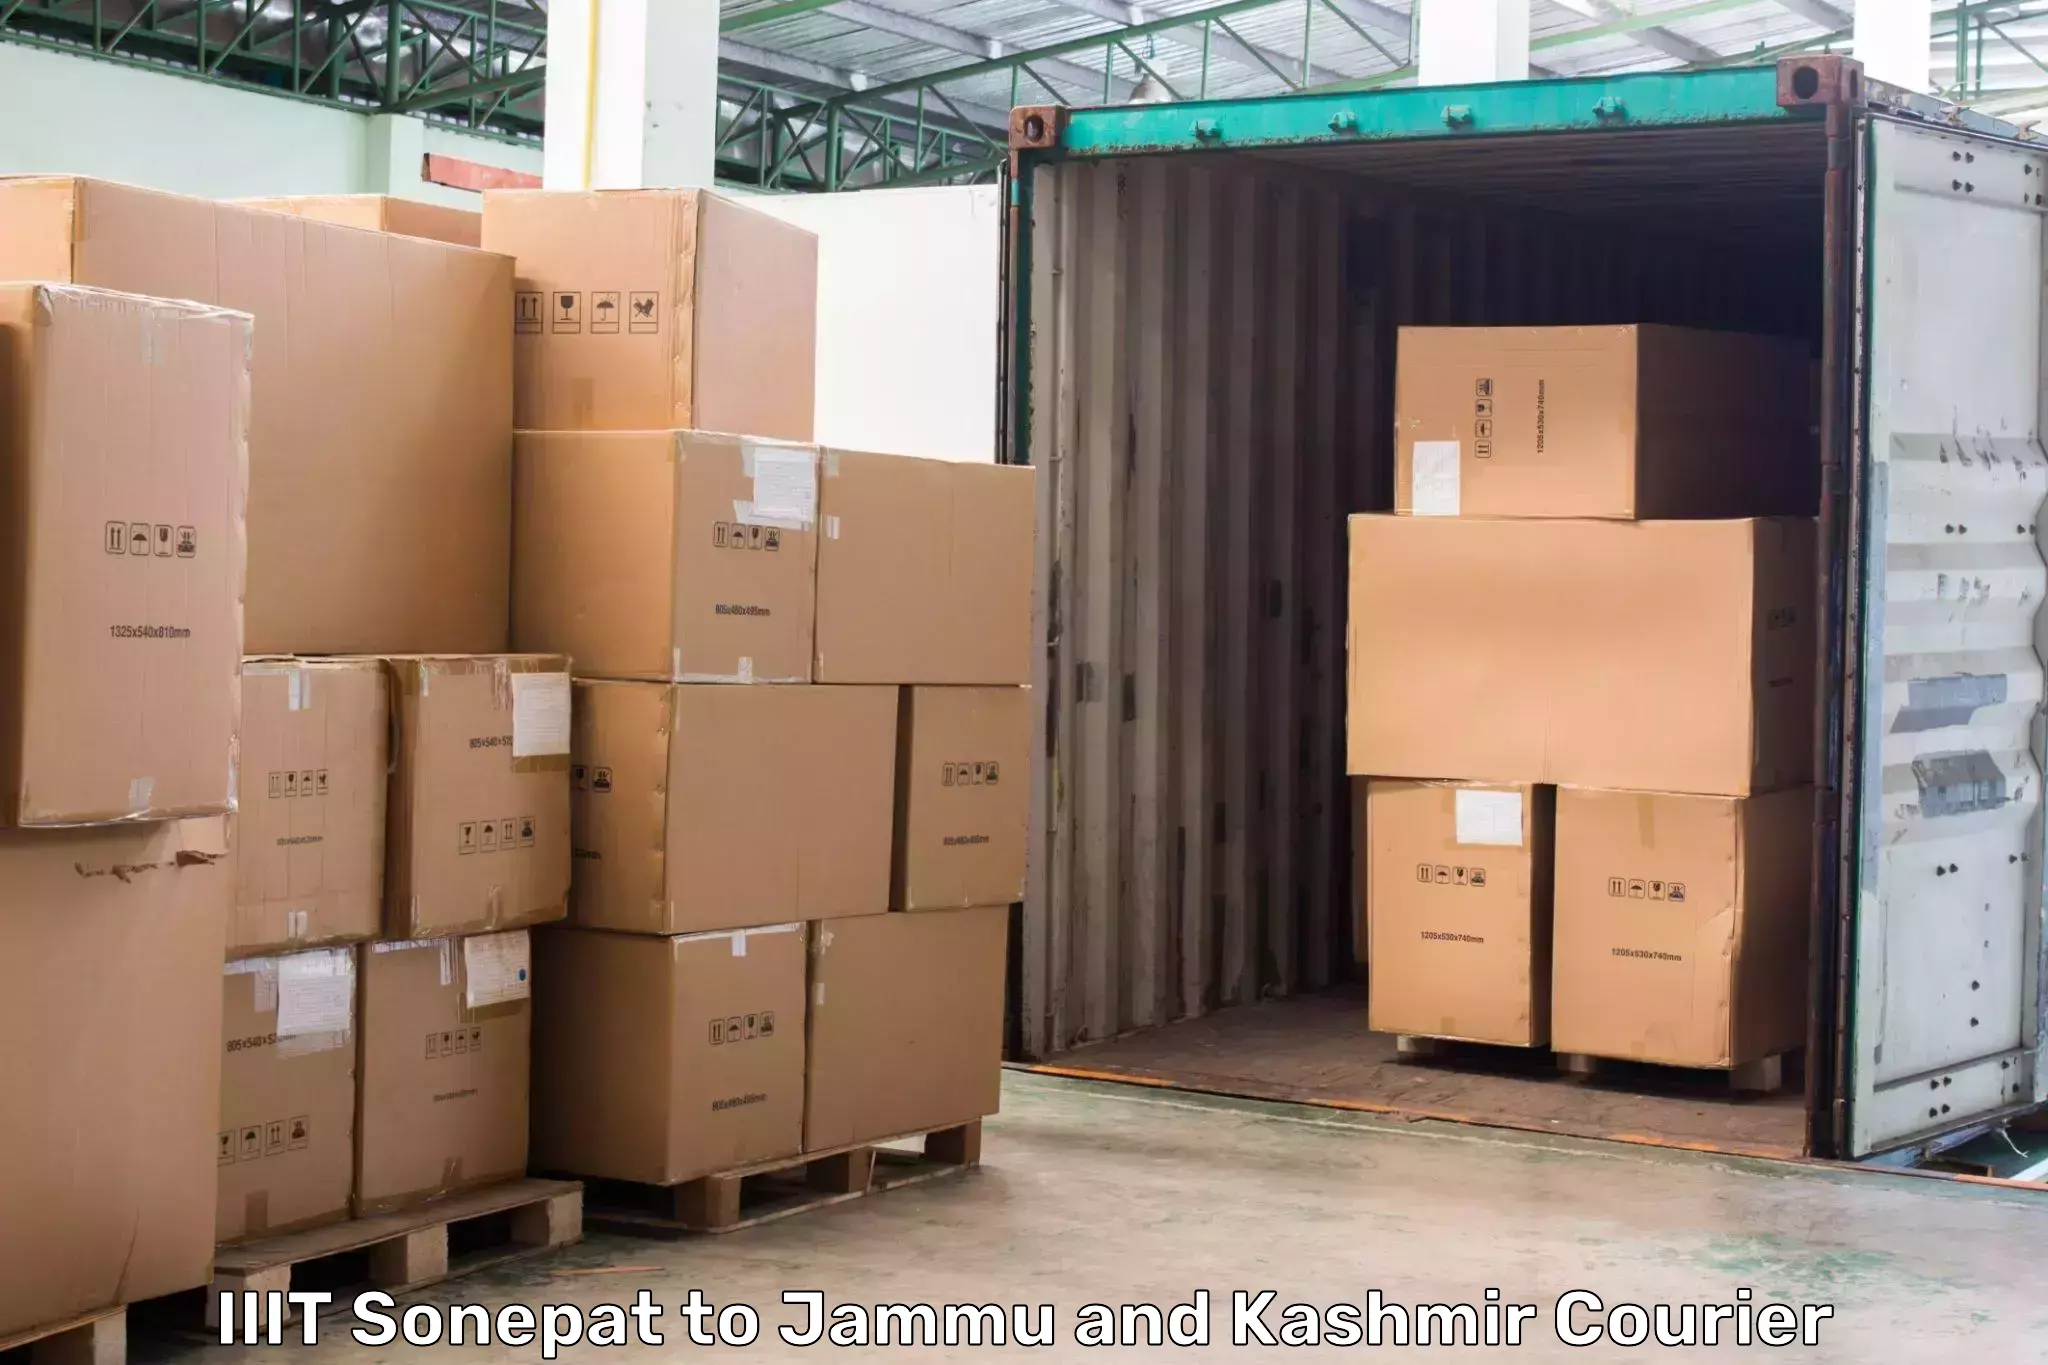 Express package handling IIIT Sonepat to Pulwama